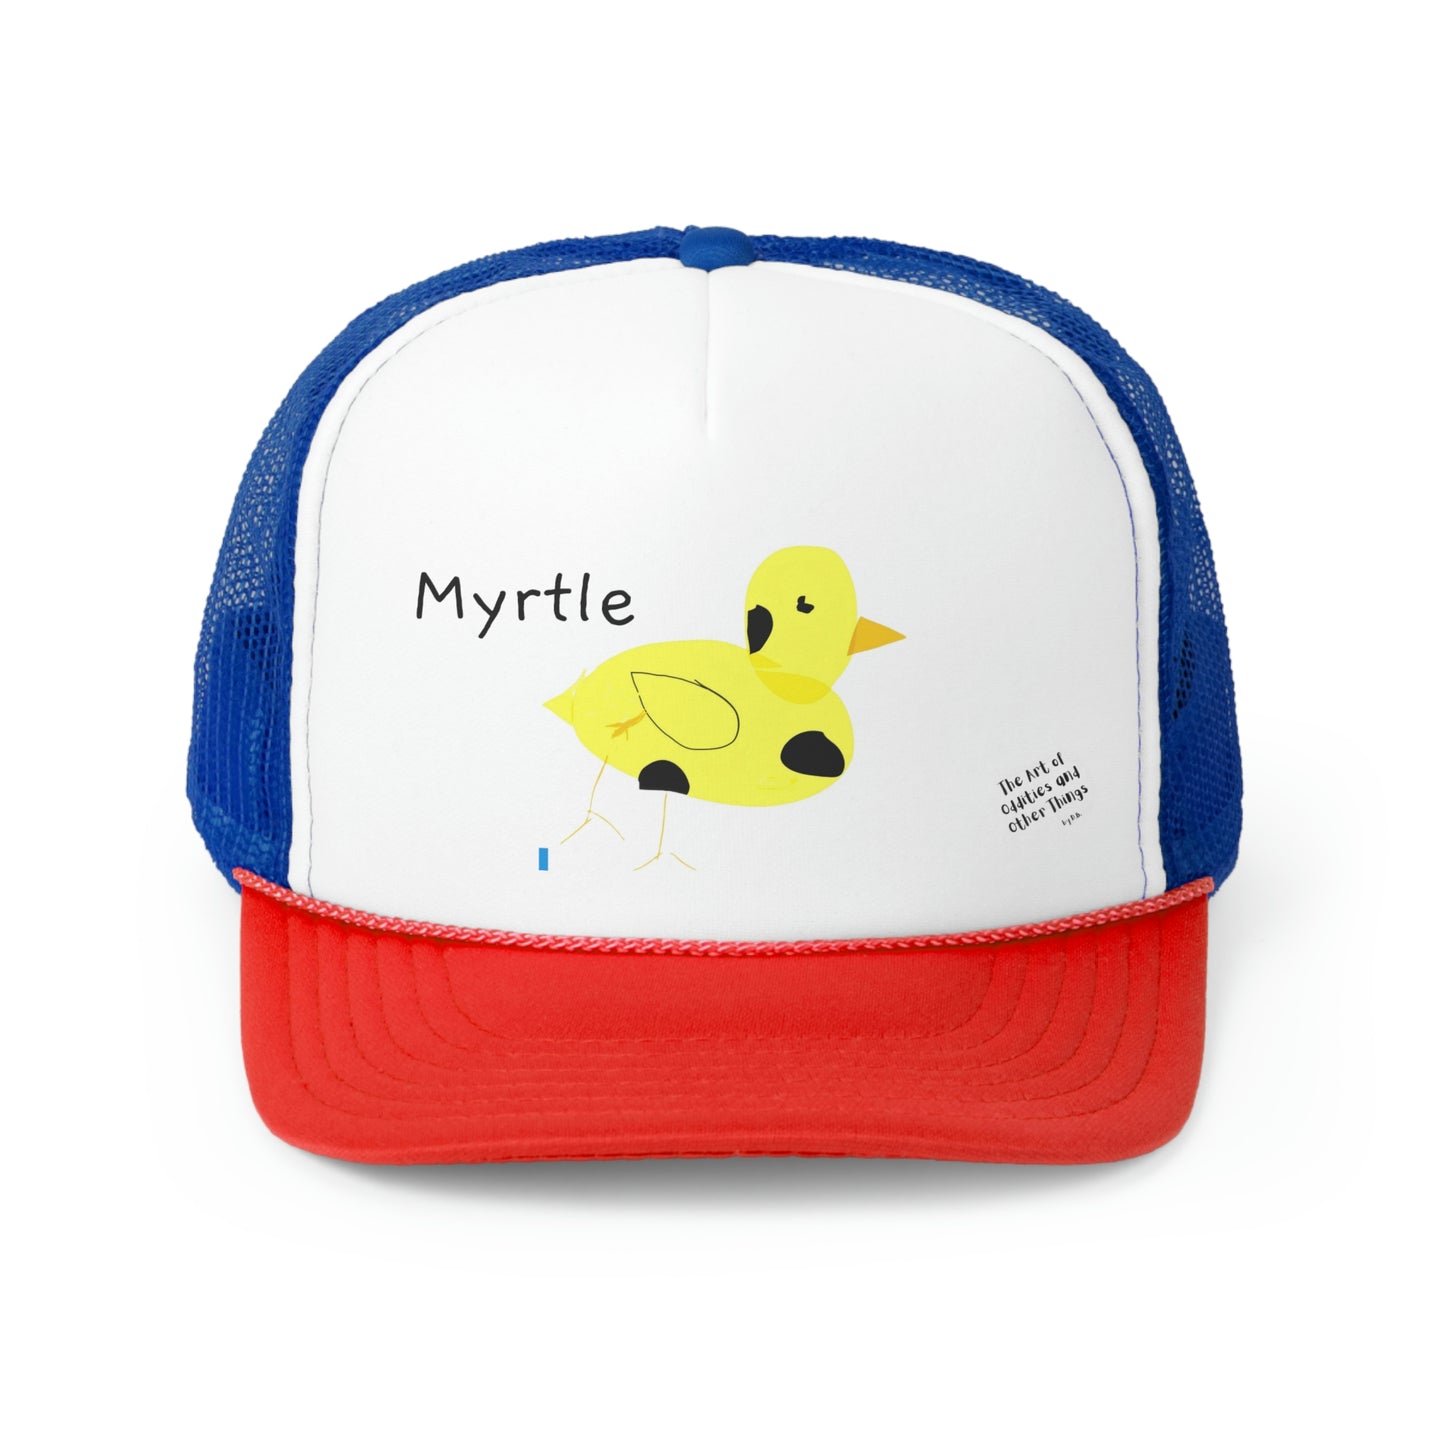 Myrtle the Four-Legged Chicken Trucker Caps